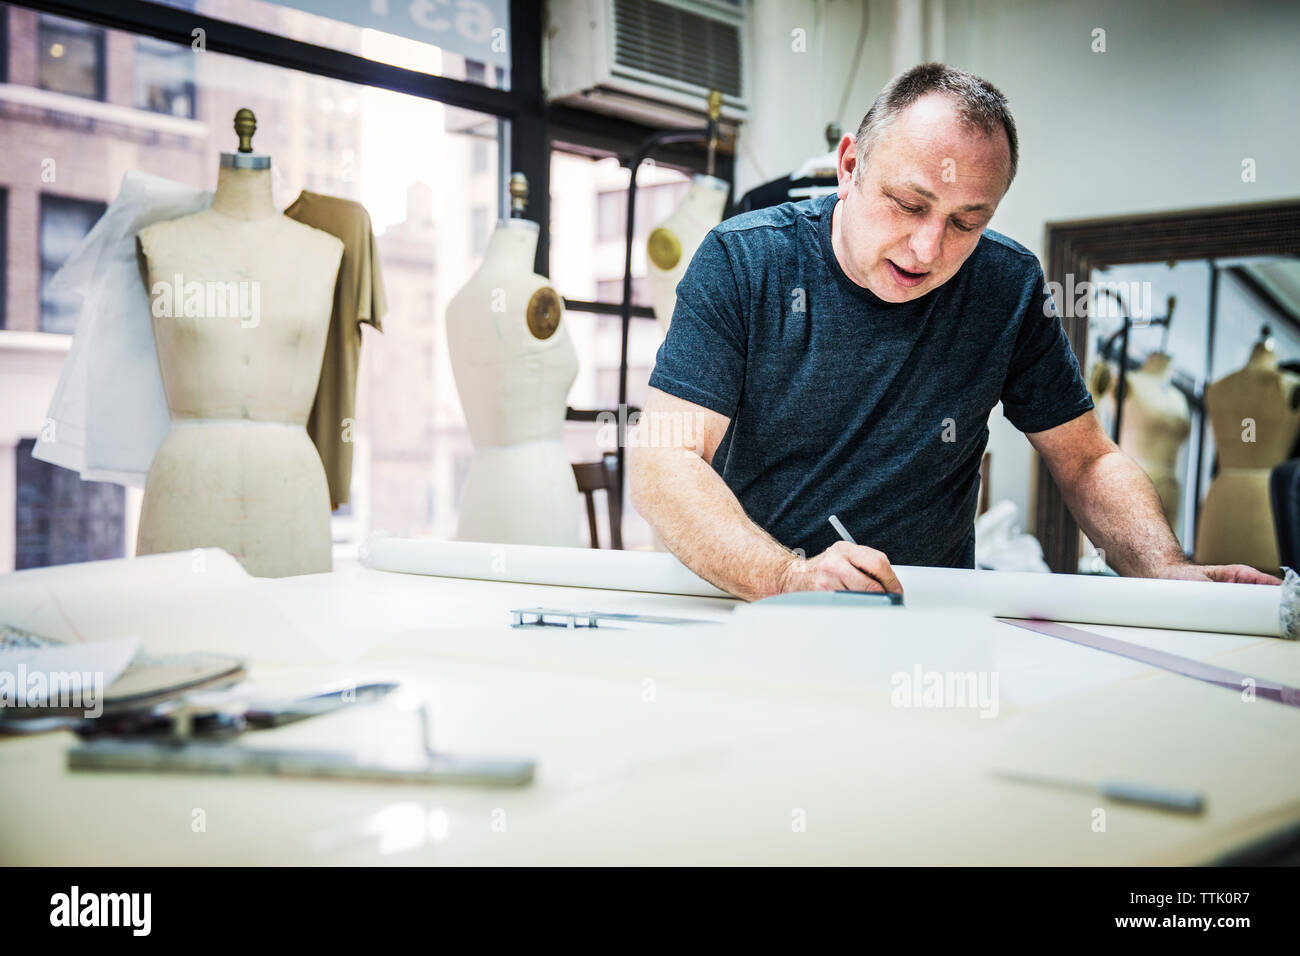 Créateur de mode sérieux working at table in design studio Banque D'Images